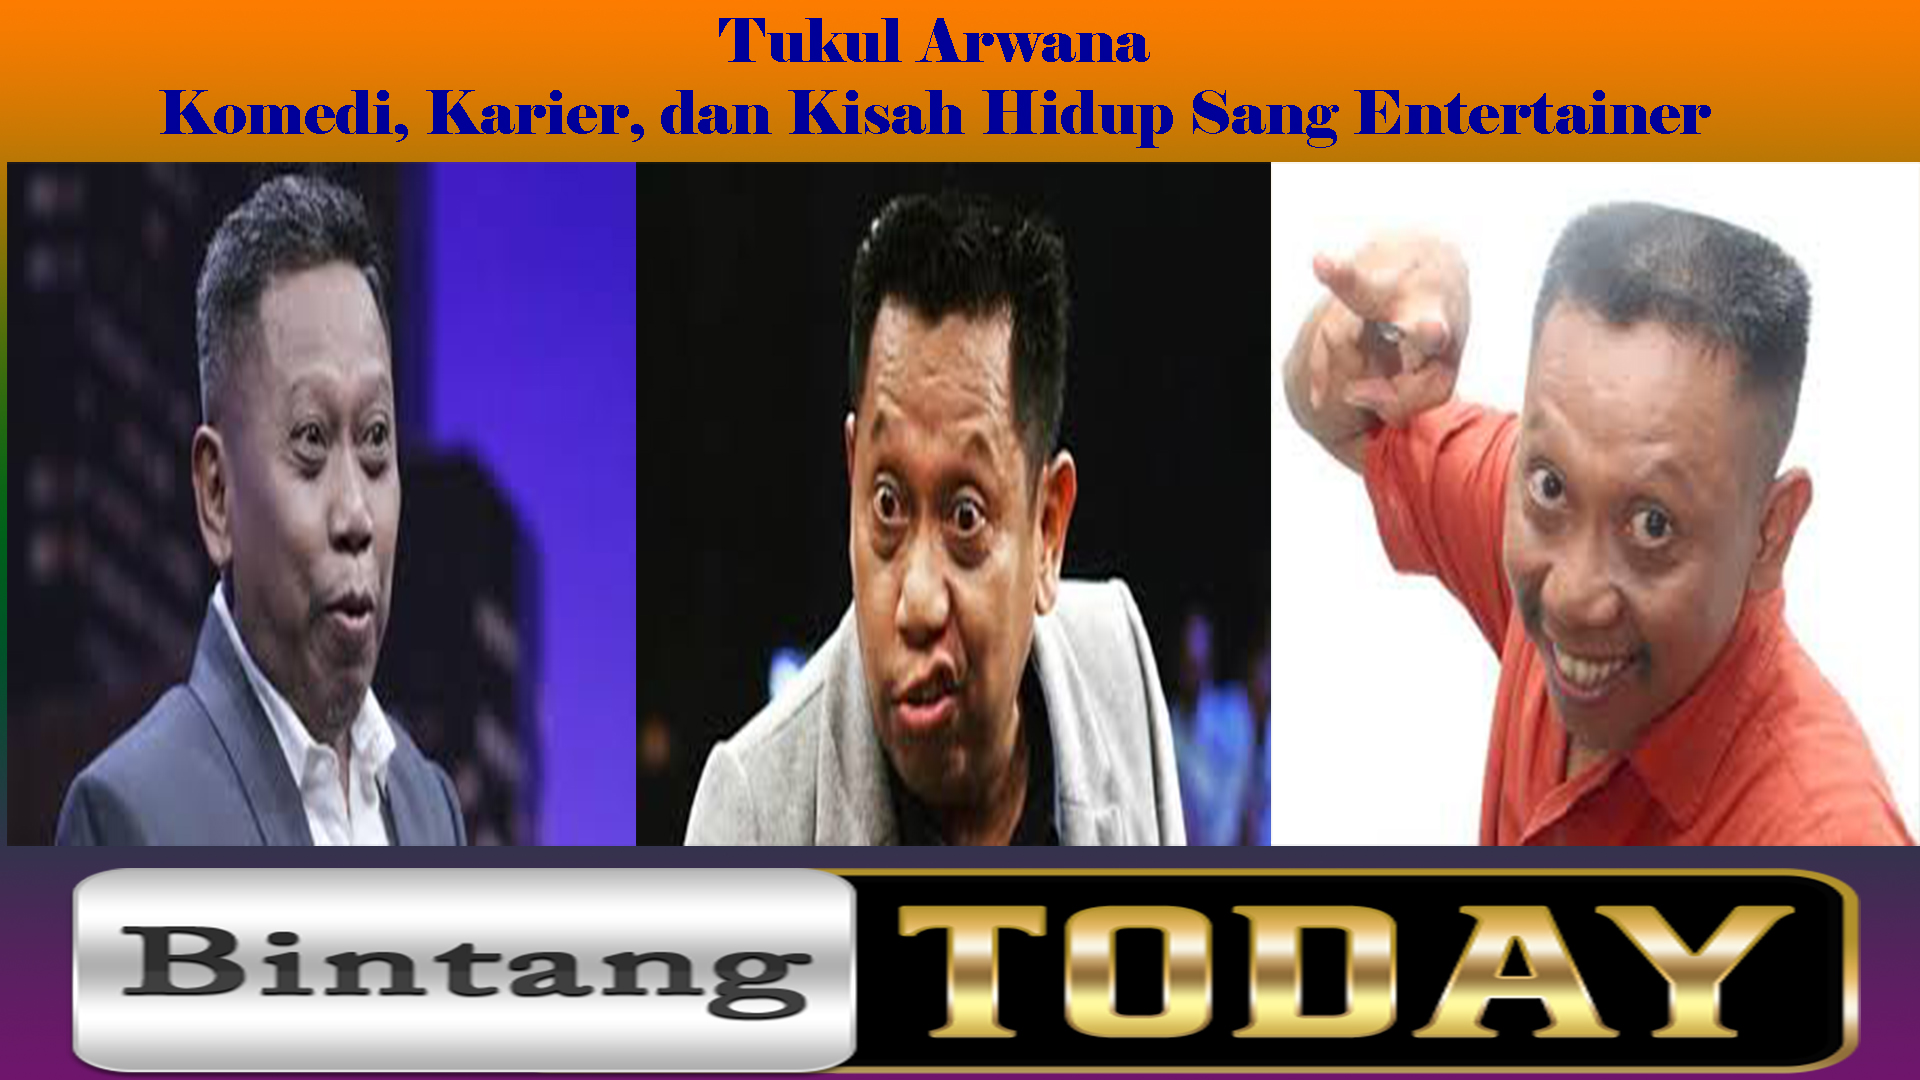 Tukul Arwana: Komedi, Karier, dan Kisah Hidup Sang Entertainer